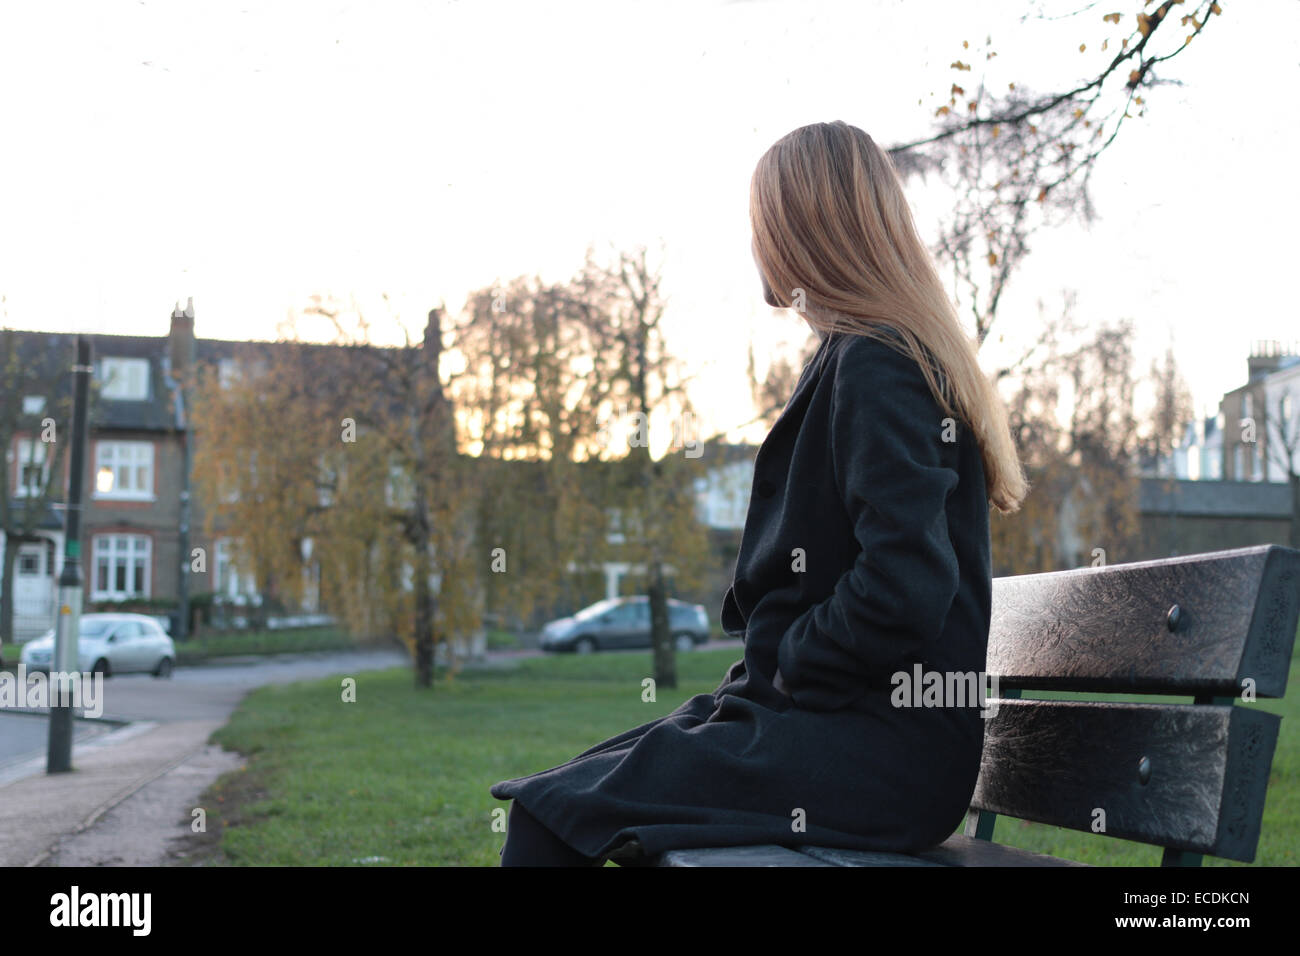 Rückansicht-Schuss von eine junge Frau sitzt auf einem Sitz wegsehen von Kamera. Stockfoto